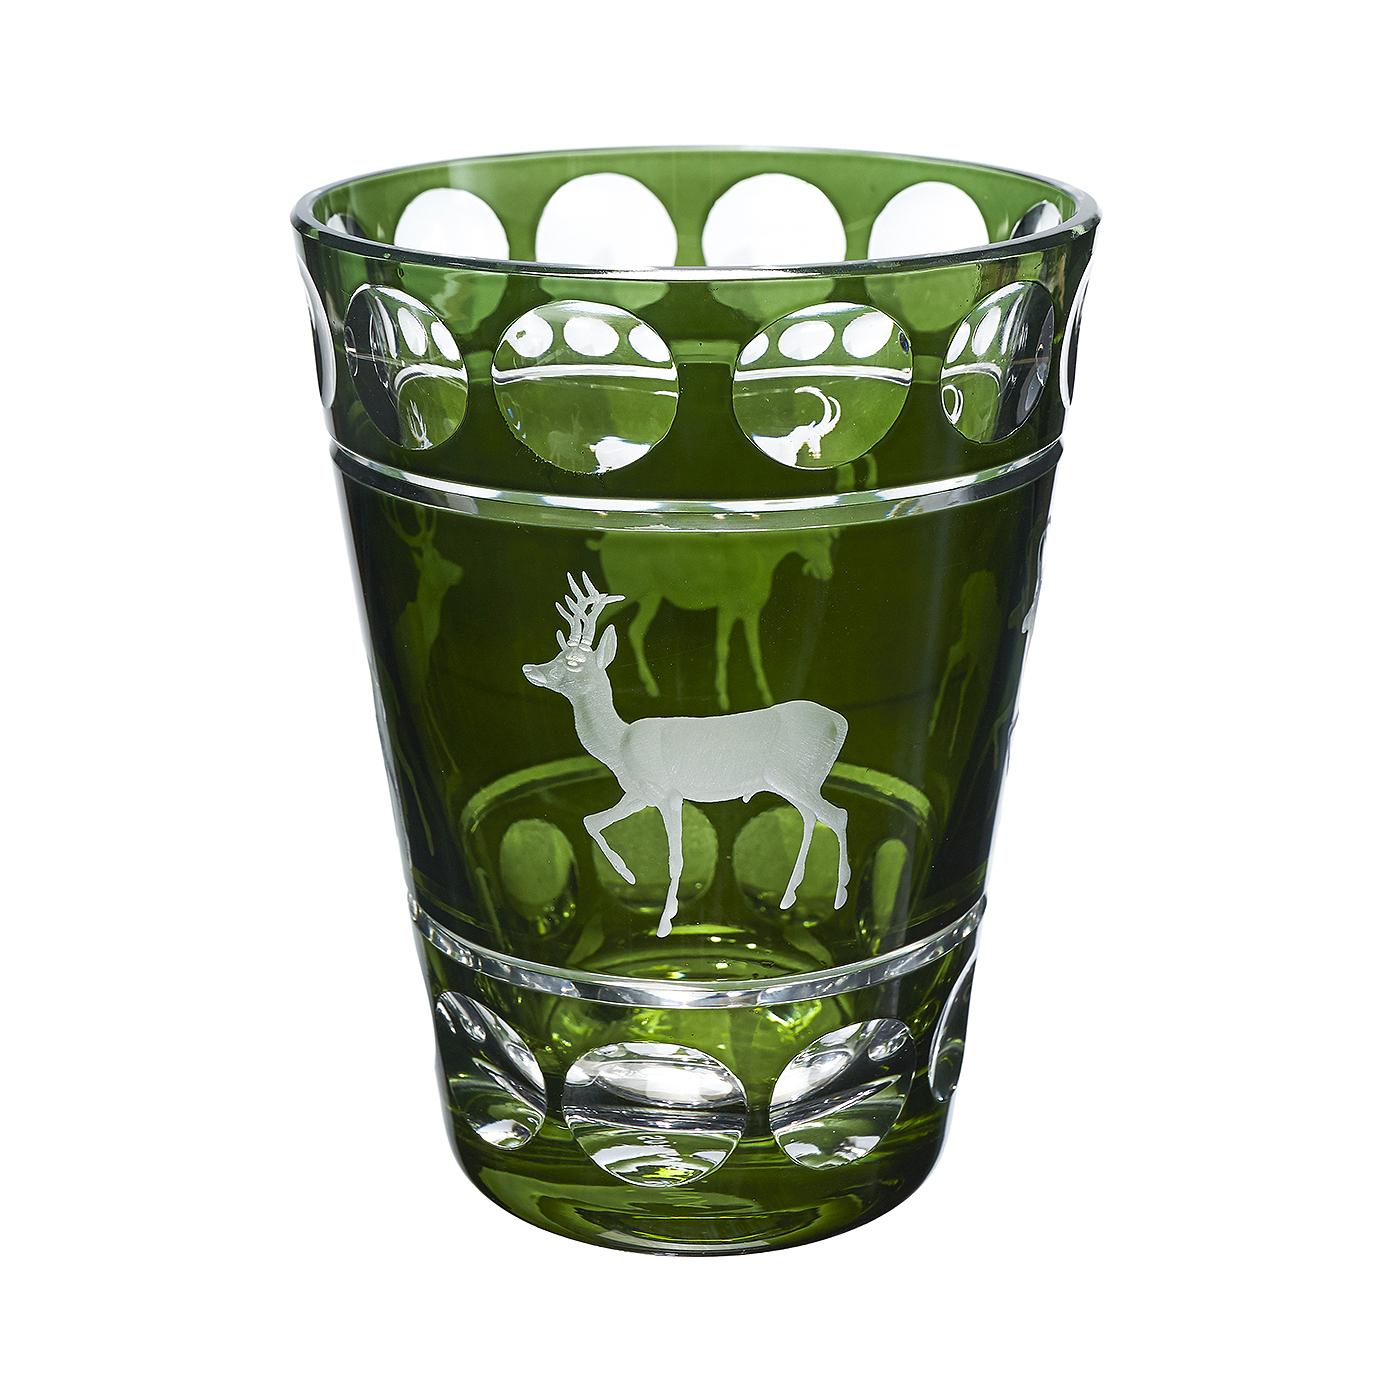 mundgeblasene Kristallvase aus grünem Glas mit einer Jagdszene. Das Dekor ist ein Jagddekor mit 4 freihändig eingravierten Tieren im naturnahen Stil. Vollständig mundgeblasen und handgraviert in Bayern/Deutschland. Das hier gezeigte Glas ist in